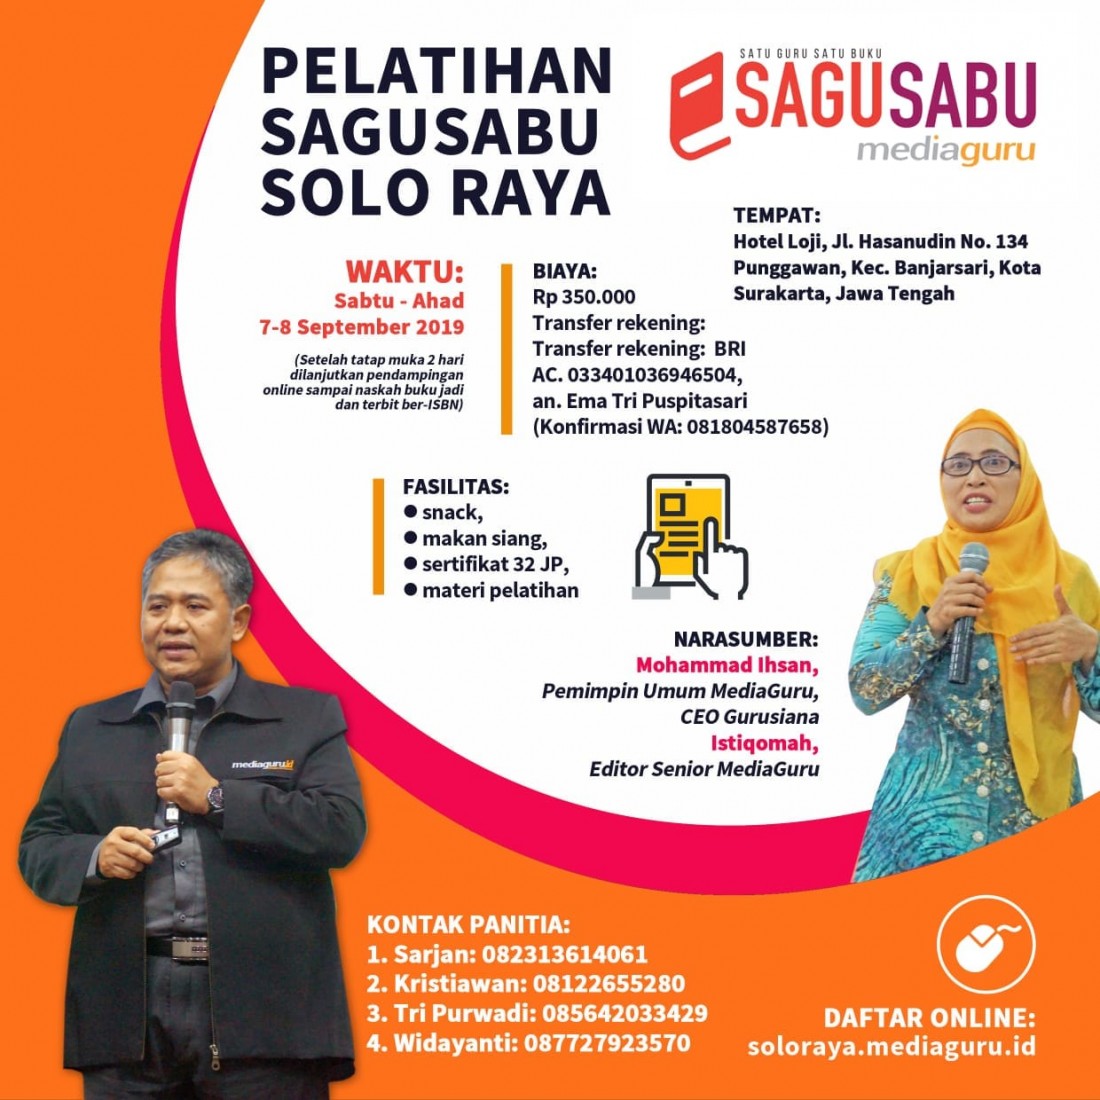 Pelatihan Sagusabu Solo Raya (7 - 8 September 2019)